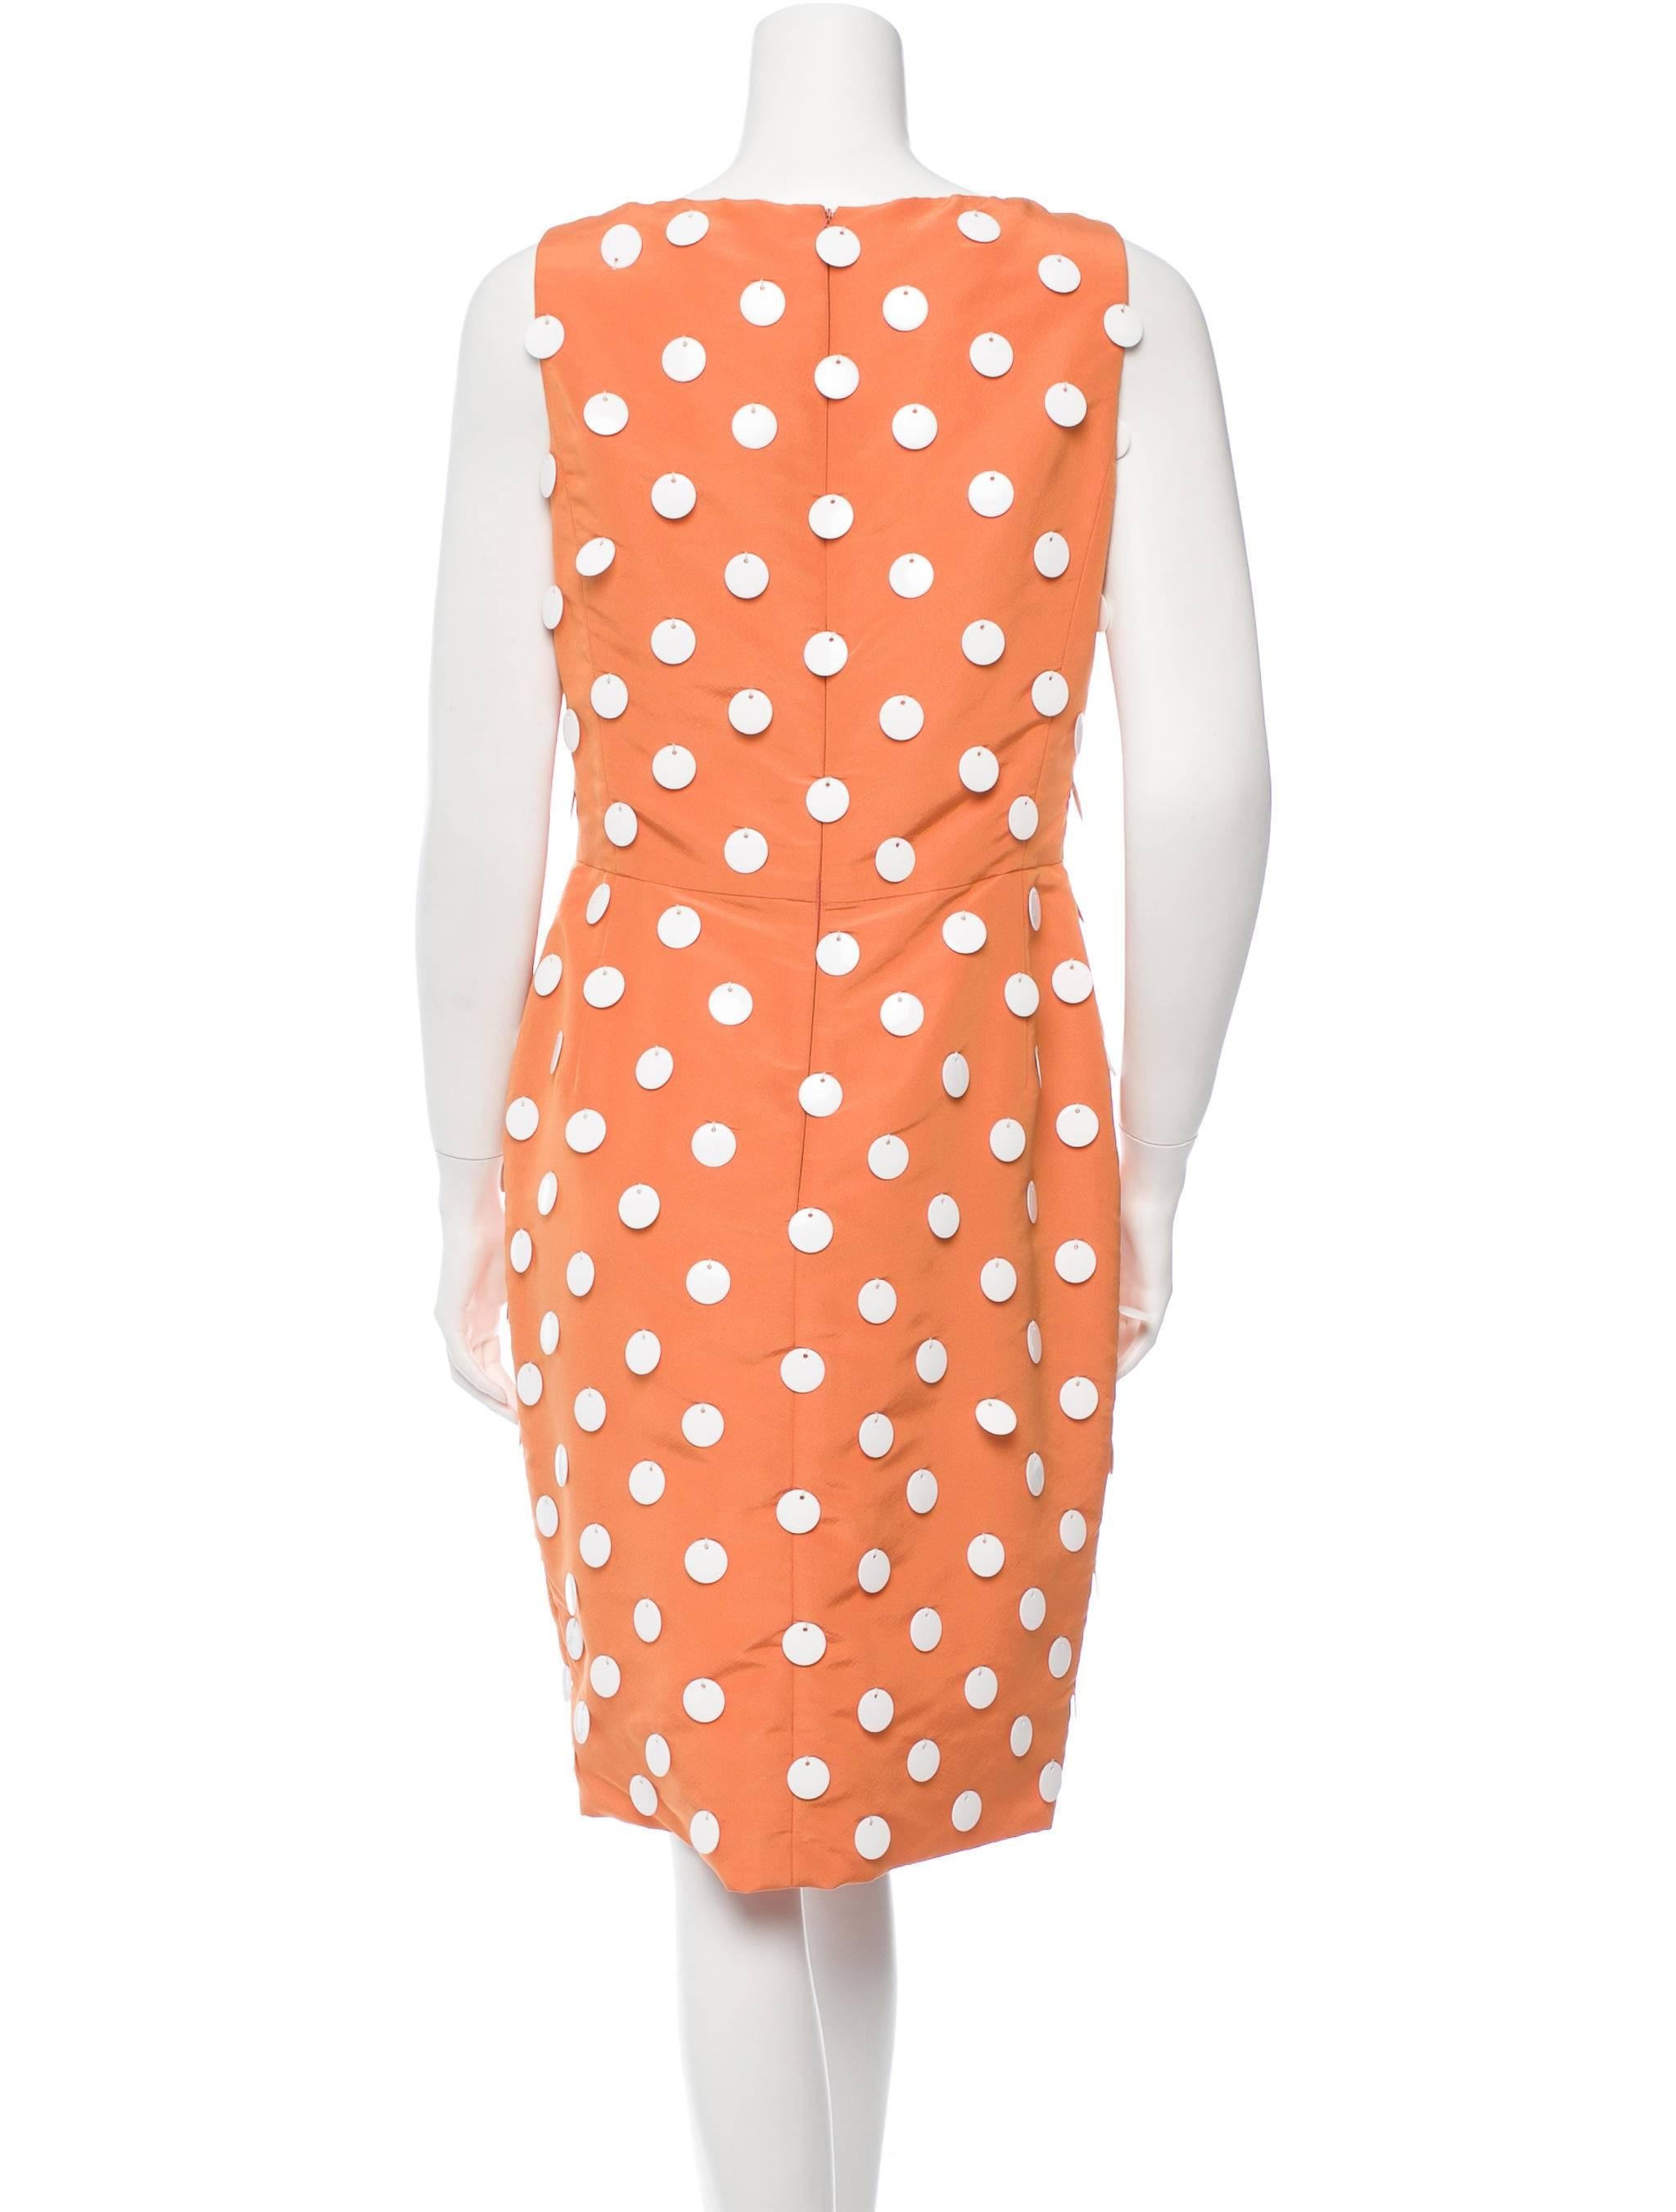 Orange Oscar de la Renta Silk Taffeta Dress with Pailettes For Sale